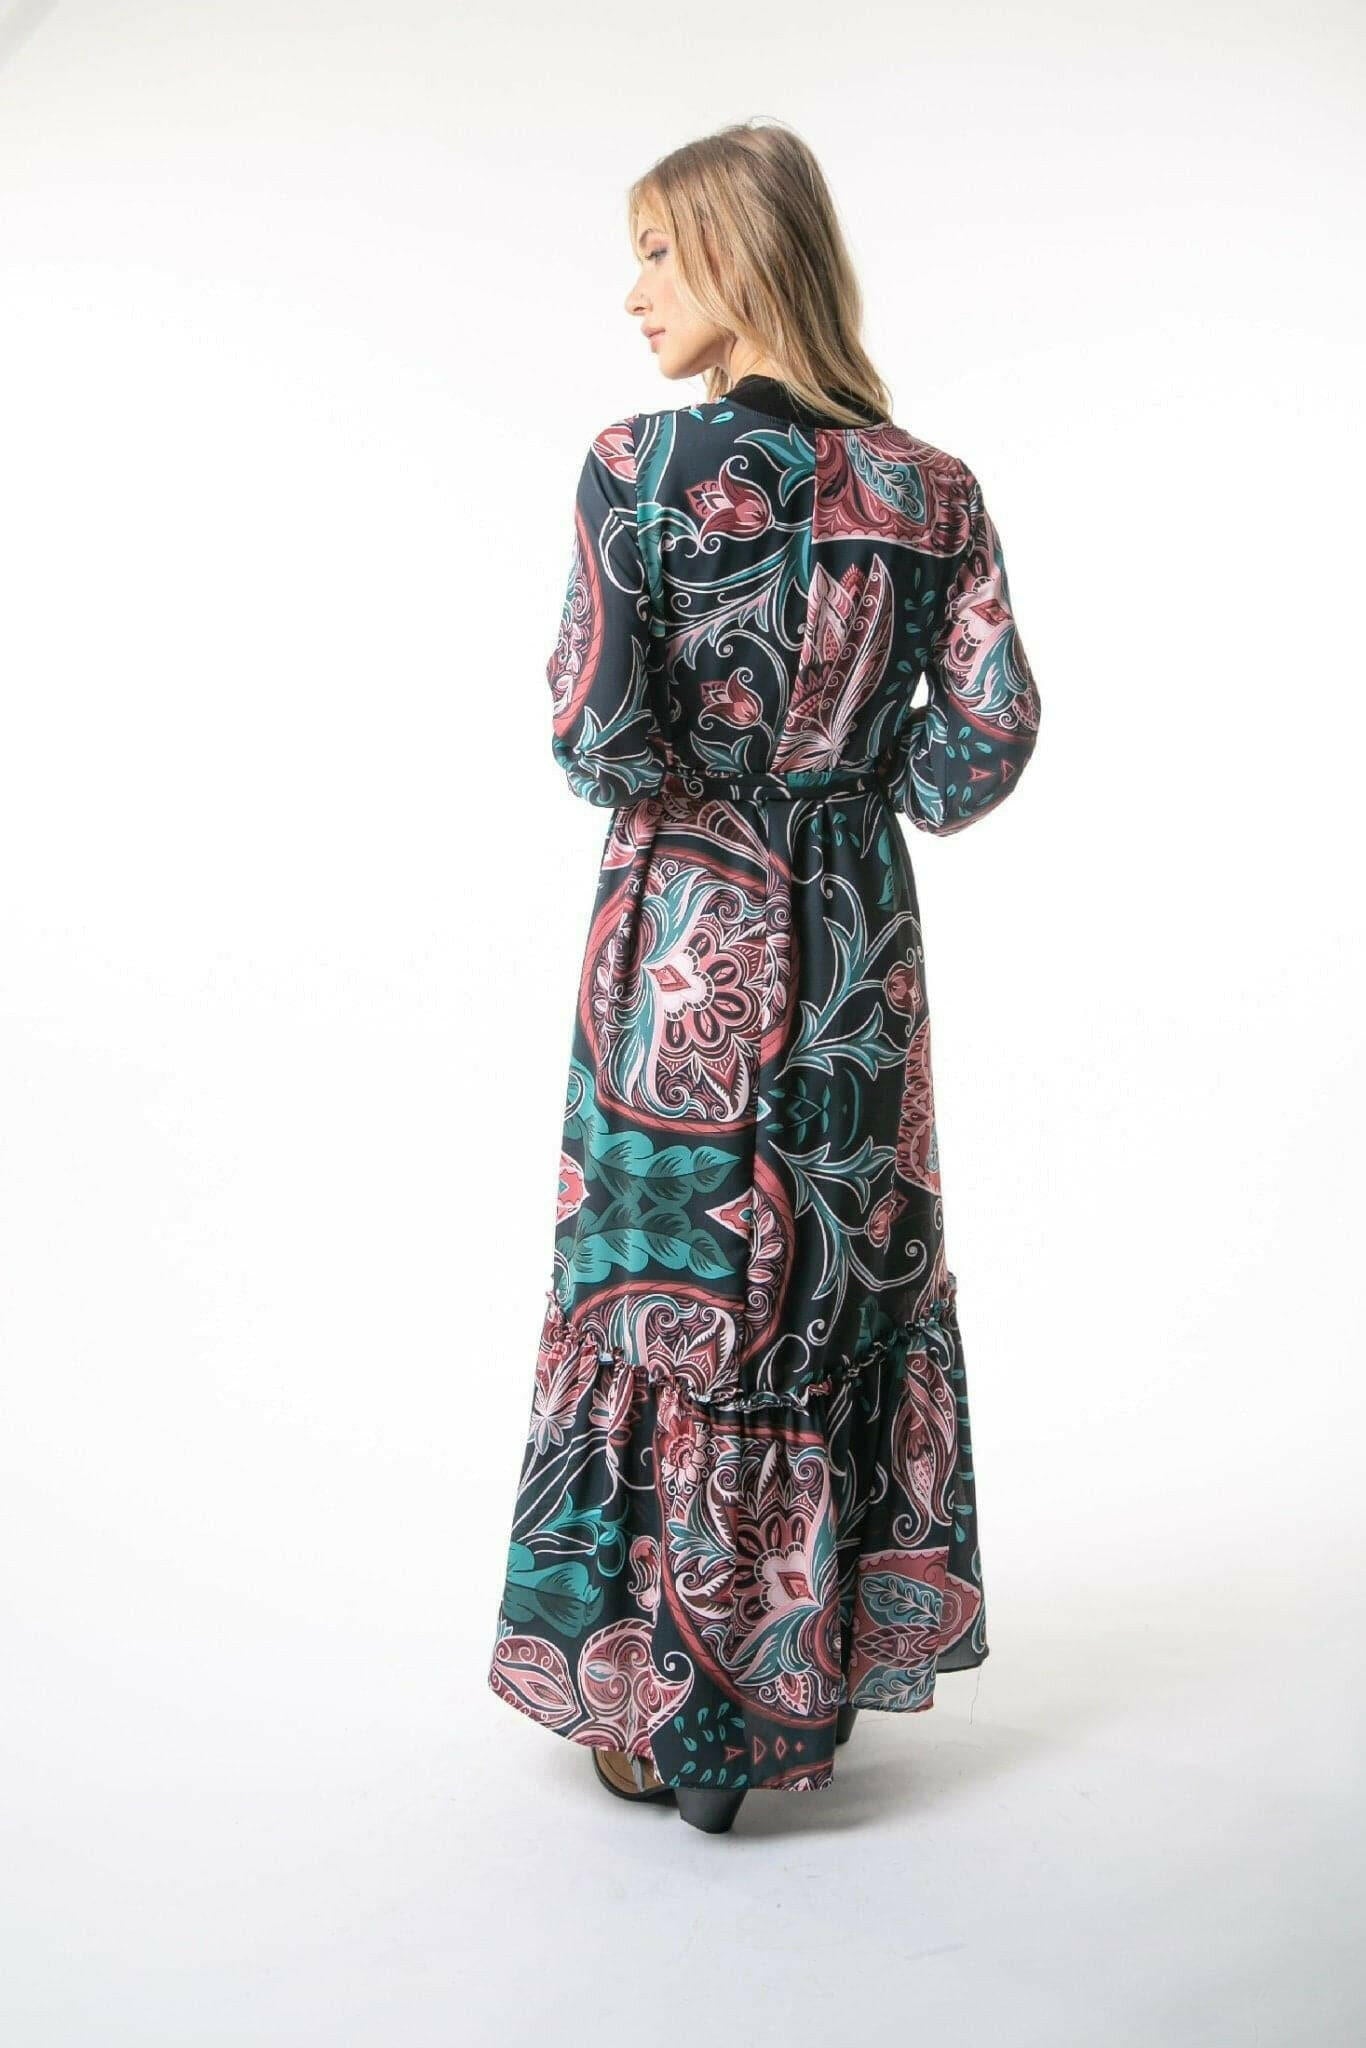 Sara Long Maxi Dress in Paisley Print with Long Sleeves Maxi Dress ByBaano   